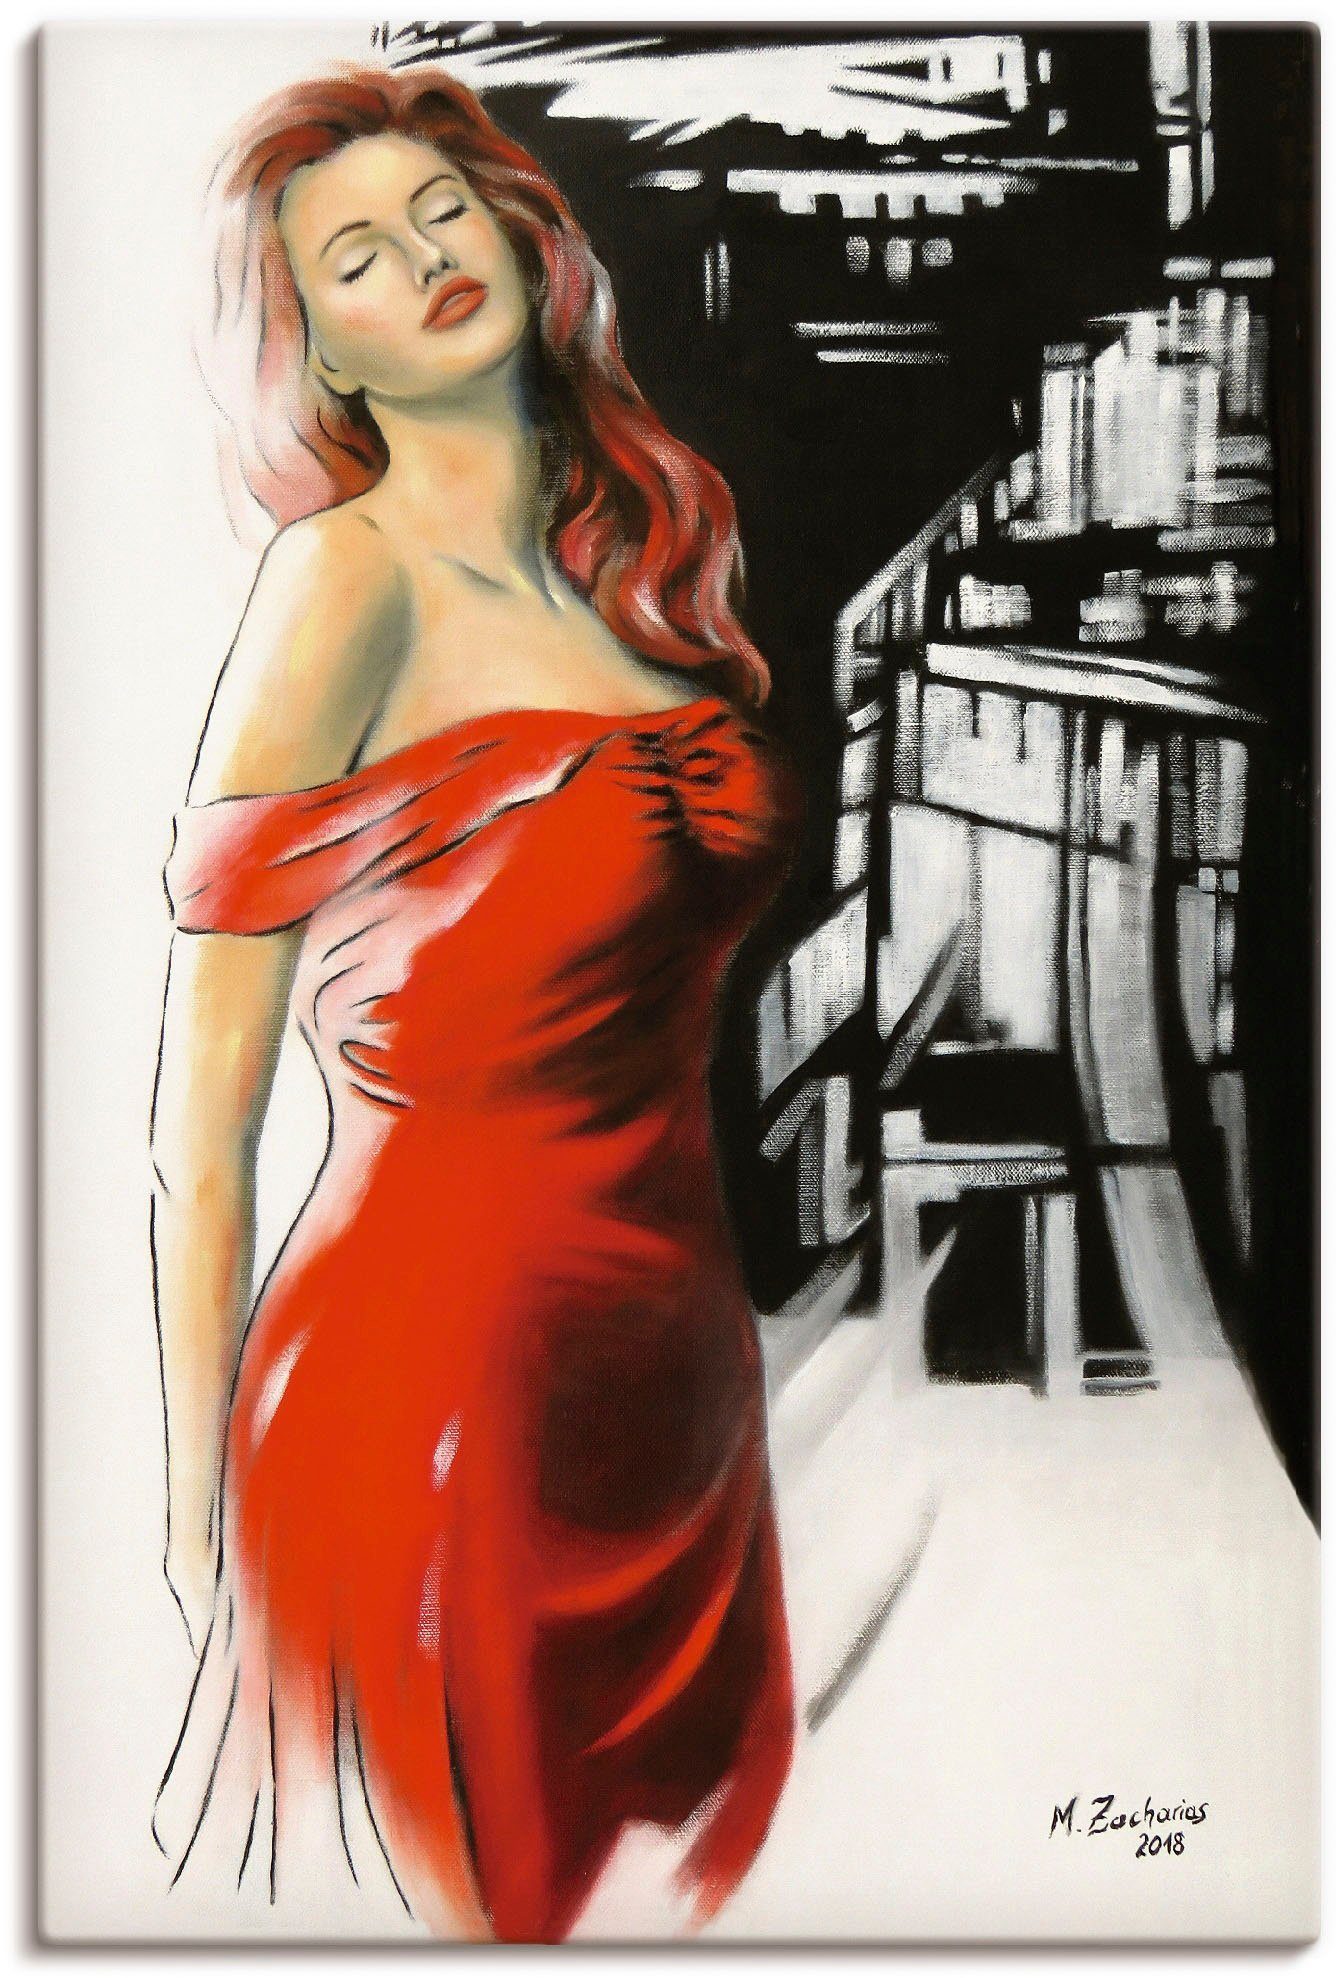 Artland Artprint Schoonheid in rode jurk in vele afmetingen & productsoorten - artprint van aluminium / artprint voor buiten, artprint op linnen, poster, muursticker / wandfolie oo